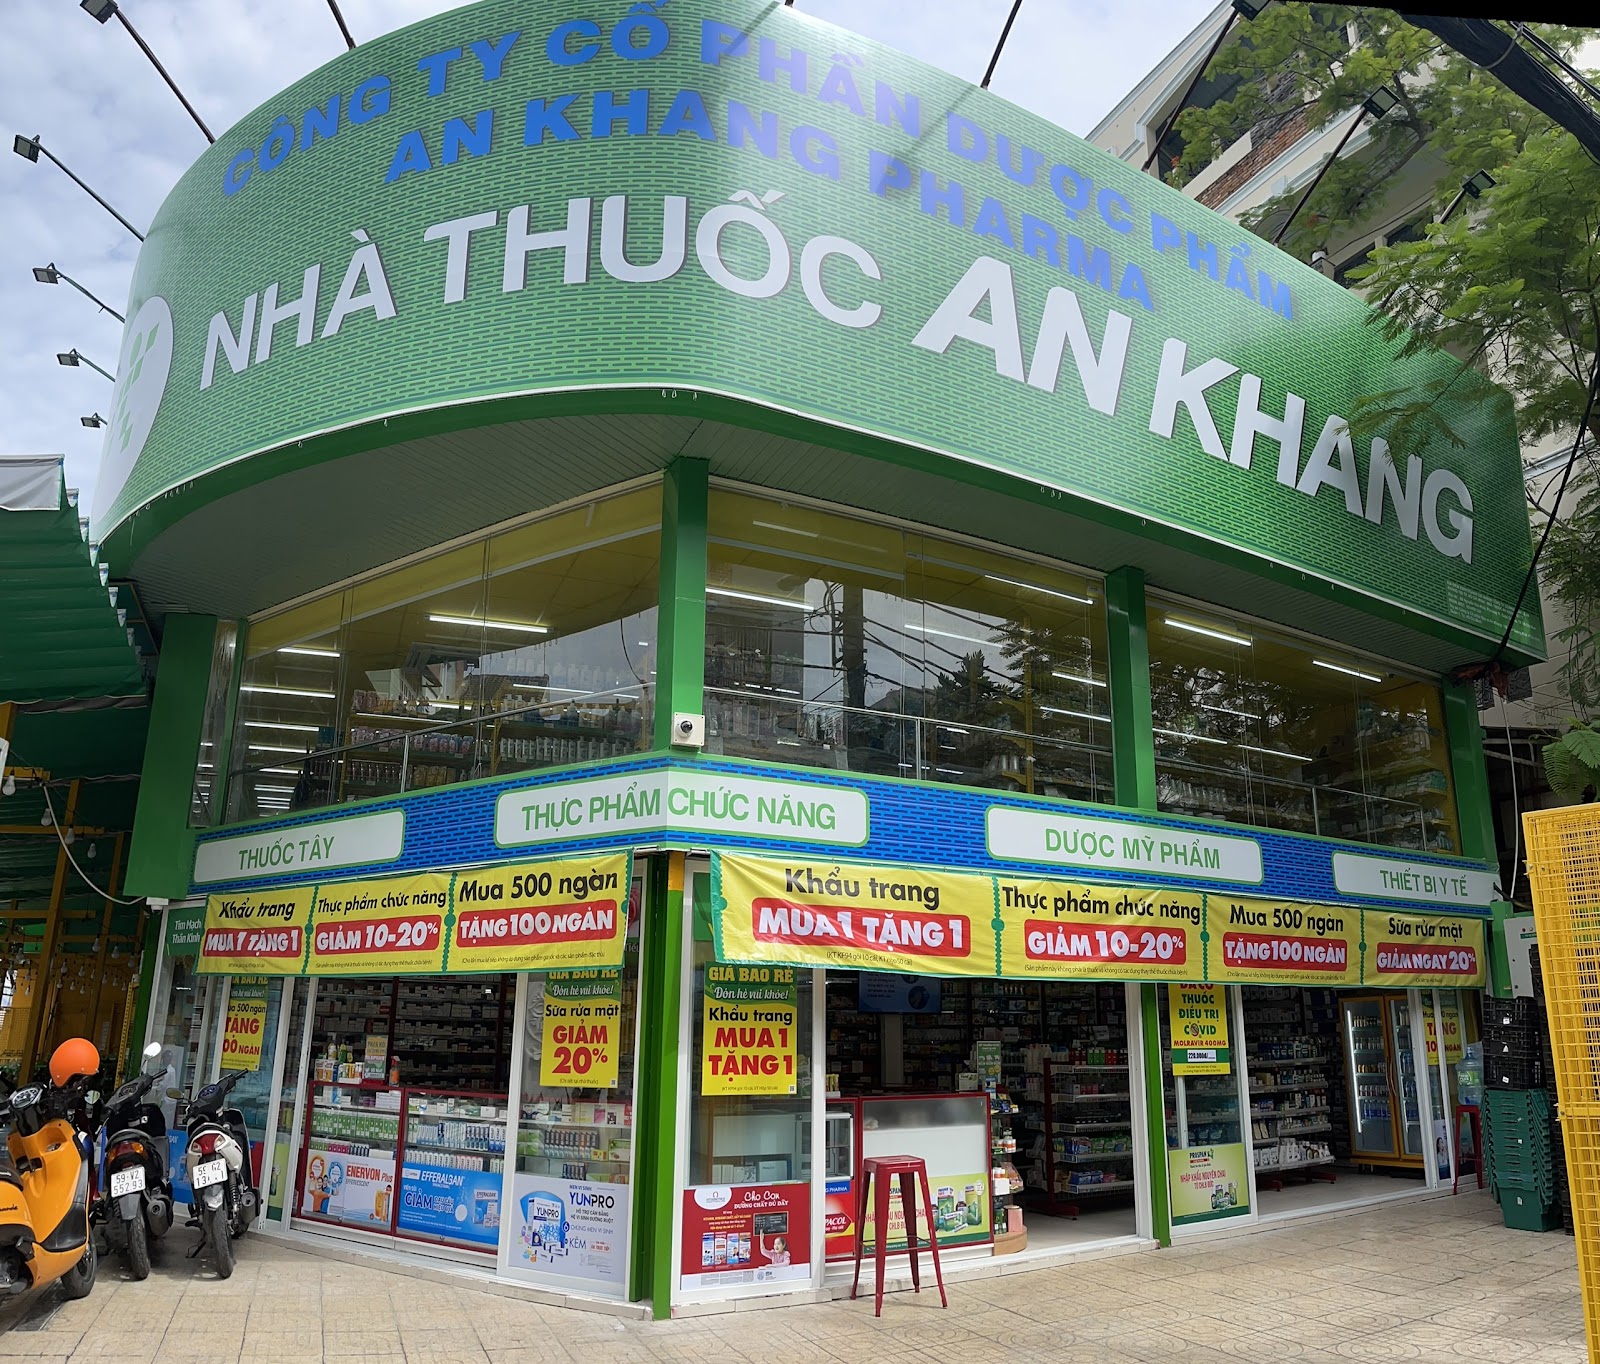 80 Nguyễn Văn Khối, Phường 11, Quận Gò Vấp, TP. Hồ Chí Minh (Ngay Bách hóa XANH cách Công viên Làng Hoa 300m)